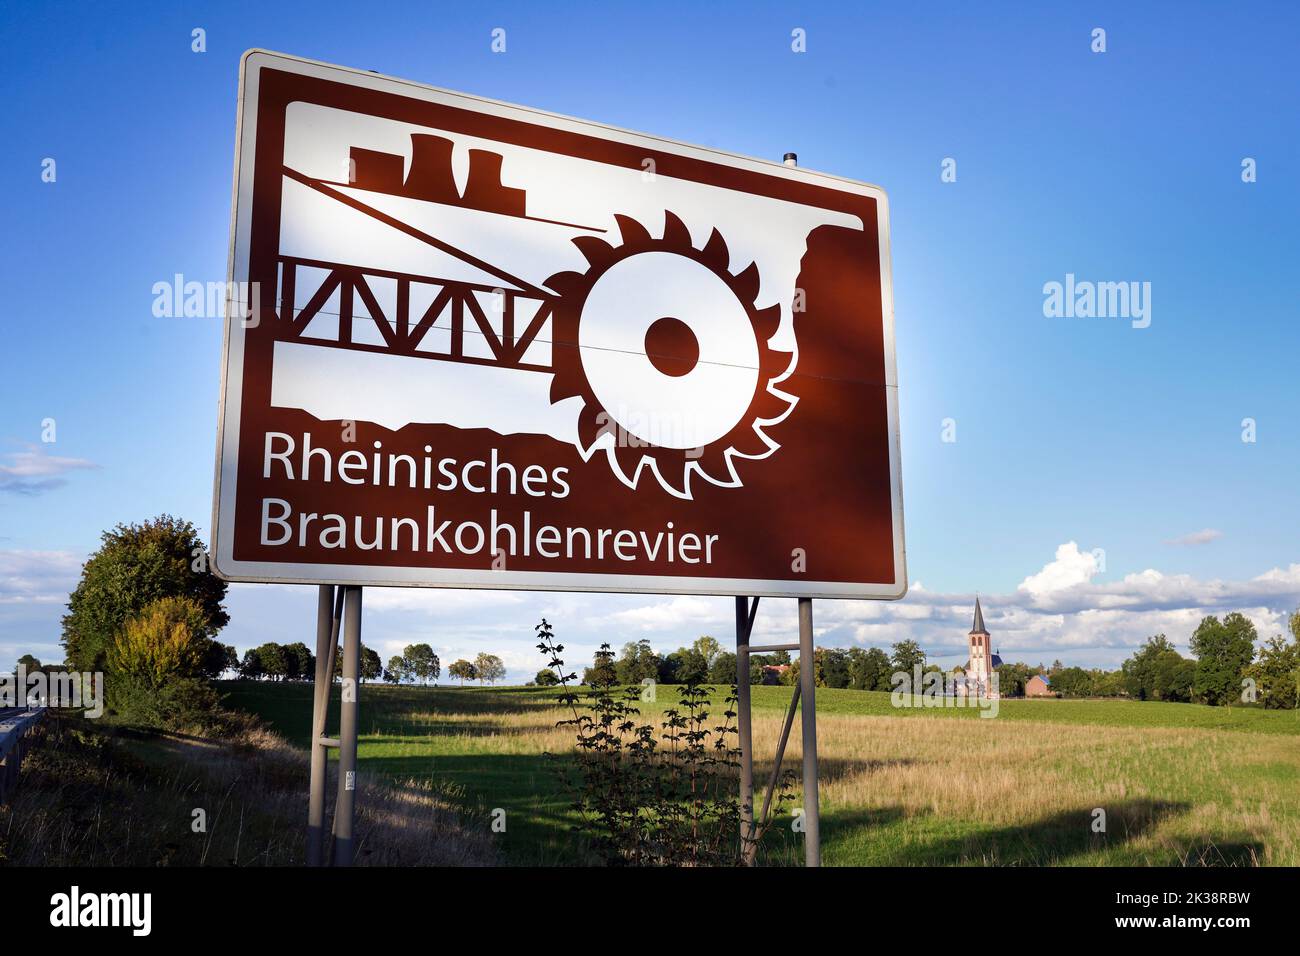 Firme con una simbólica excavadora de ruedas junto a la autopista A44 cerca de Hasselweiler en Renania del Norte-Westfalia, Alemania. El llamado 'comité de información turística' señala la atracción industrial-cultural de la zona minera de lignito renano, en la que el lignito se extrae en minas a cielo abierto en enormes pozos. Foto de stock